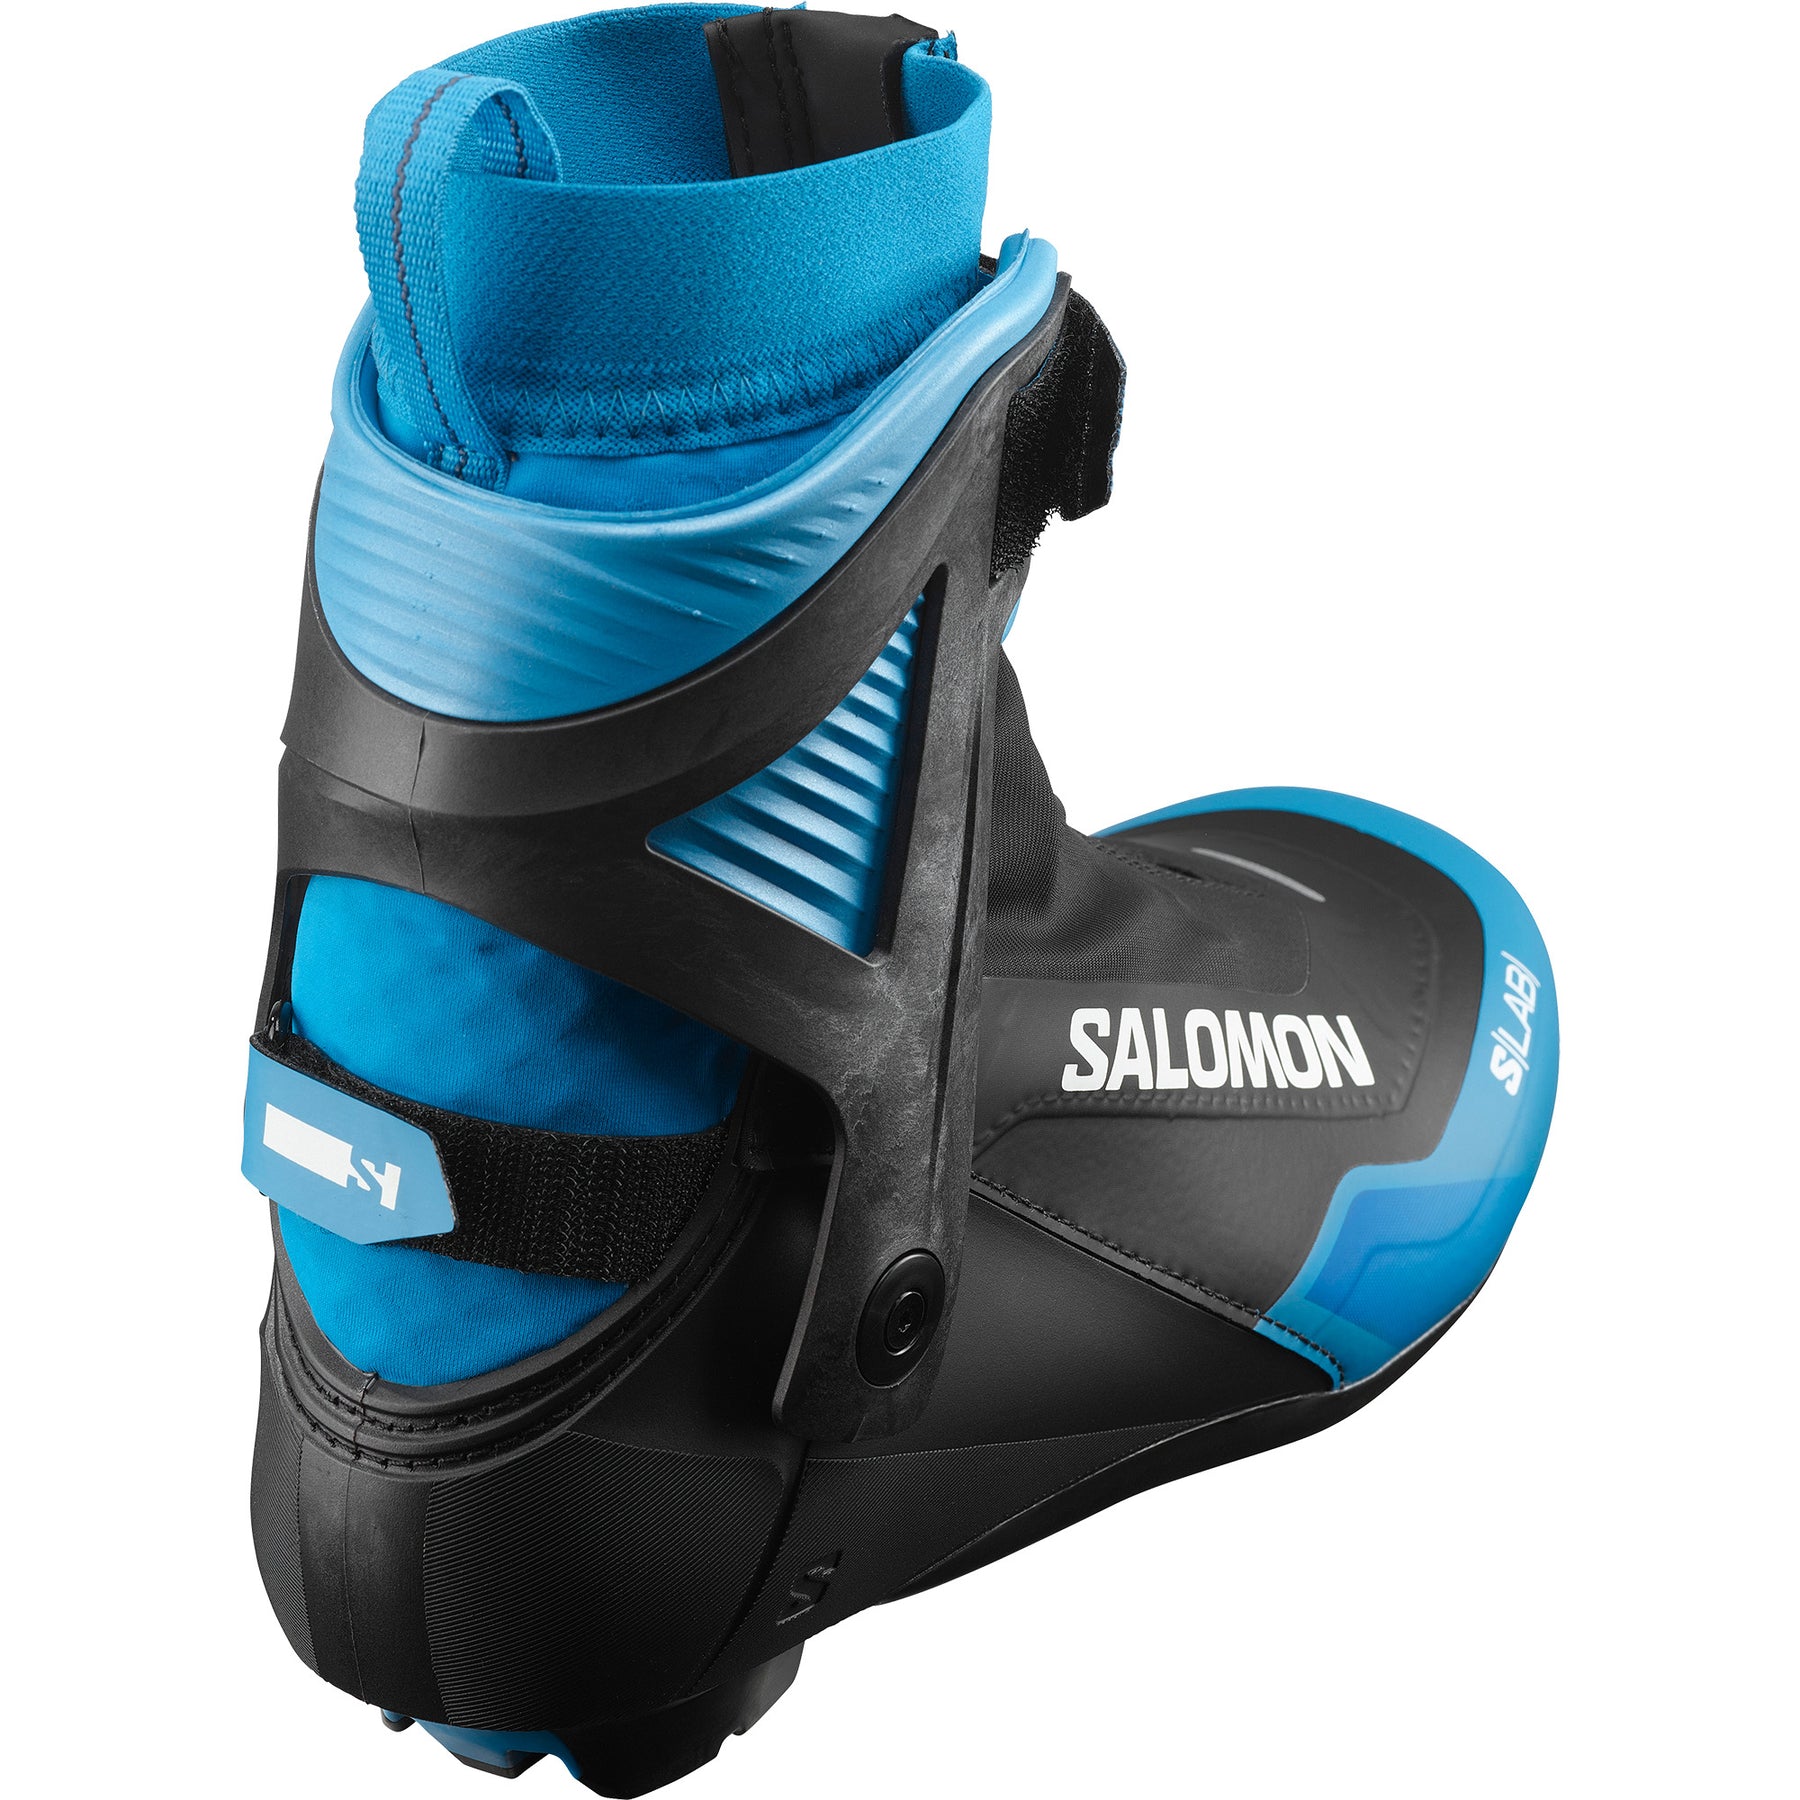 Salomon S/Lab Skiathlon CS Junior